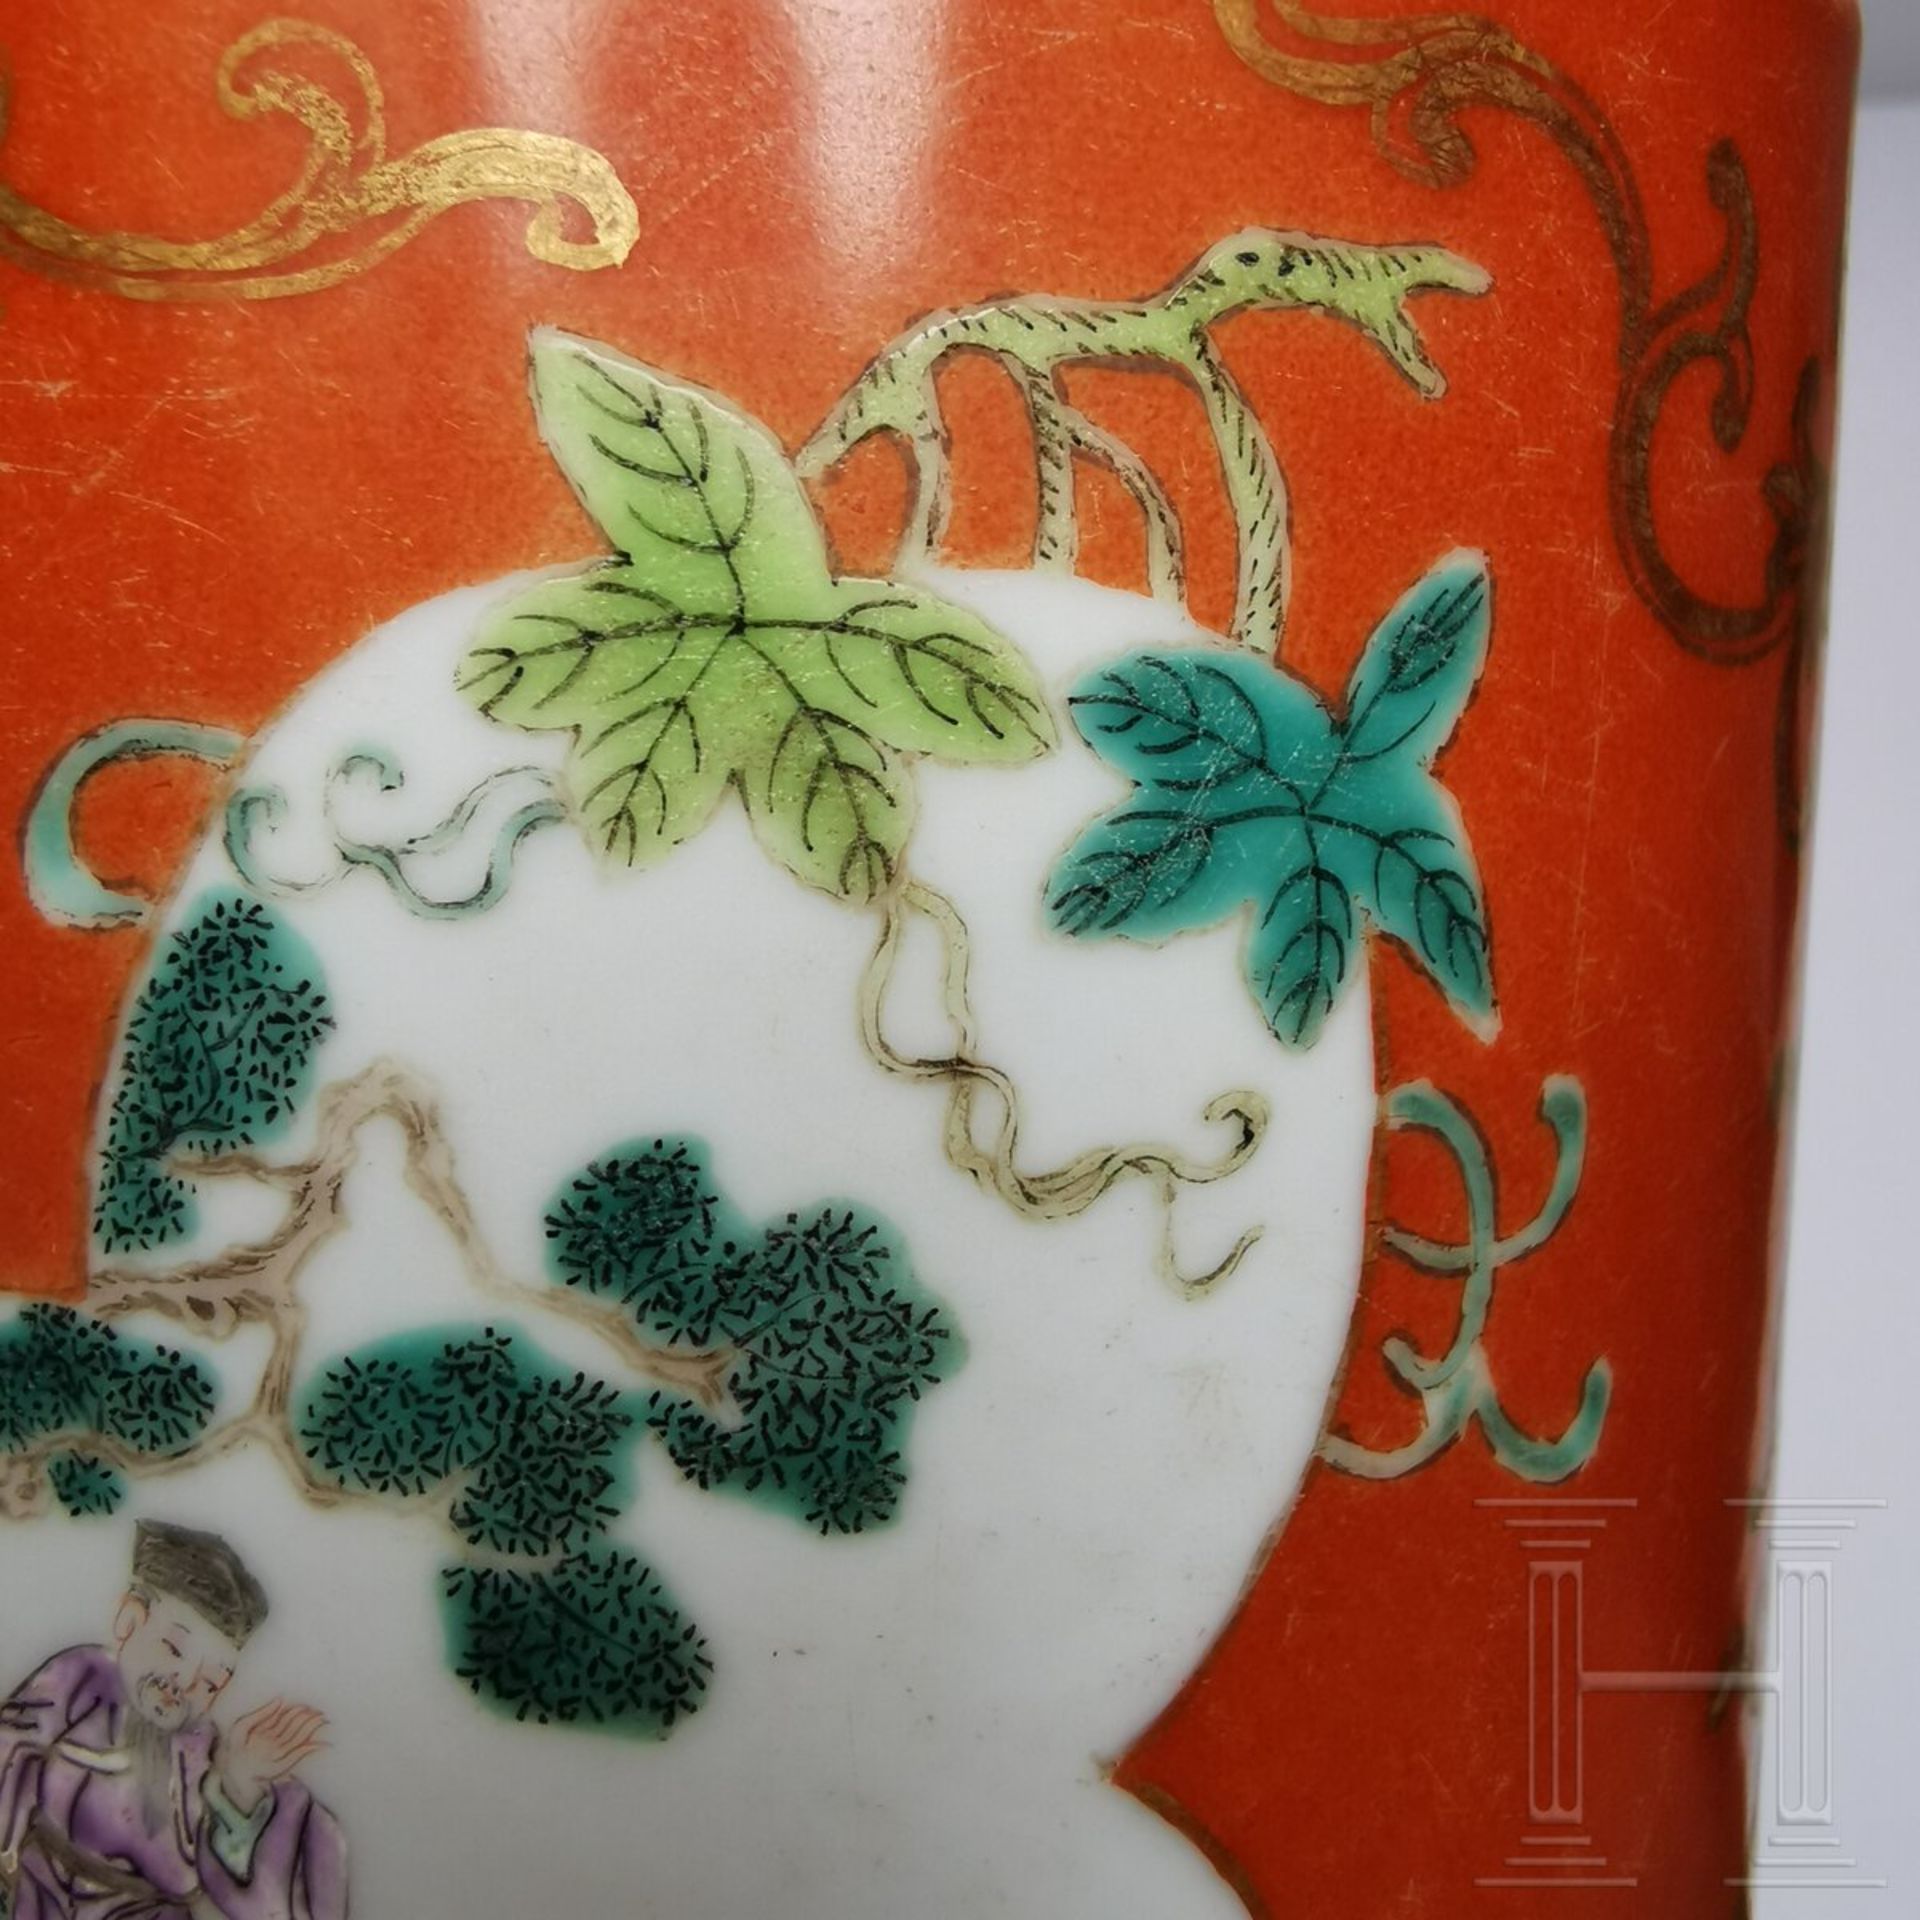 Korallenrot glasierter Famille-rose-Pinseltopf, China, wohl spätes 19. Jhdt.  - Bild 13 aus 14